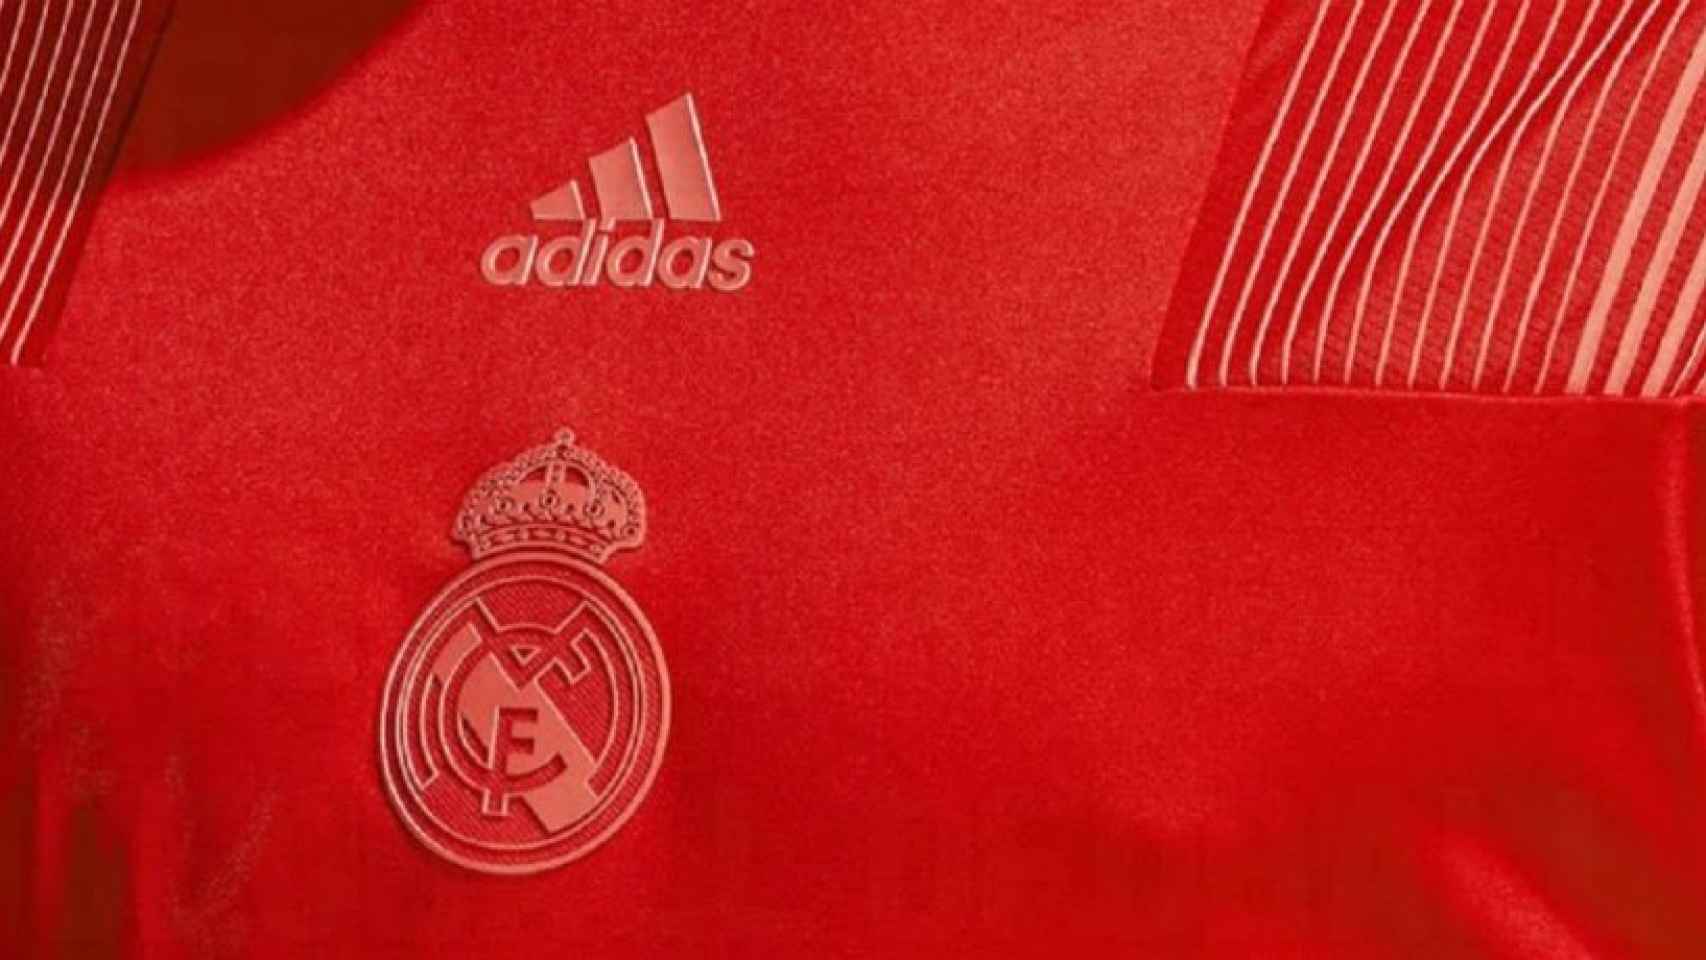 La nueva camiseta del Real Madrid para al temporada 2018/2019. Foto: footyheadlines.com